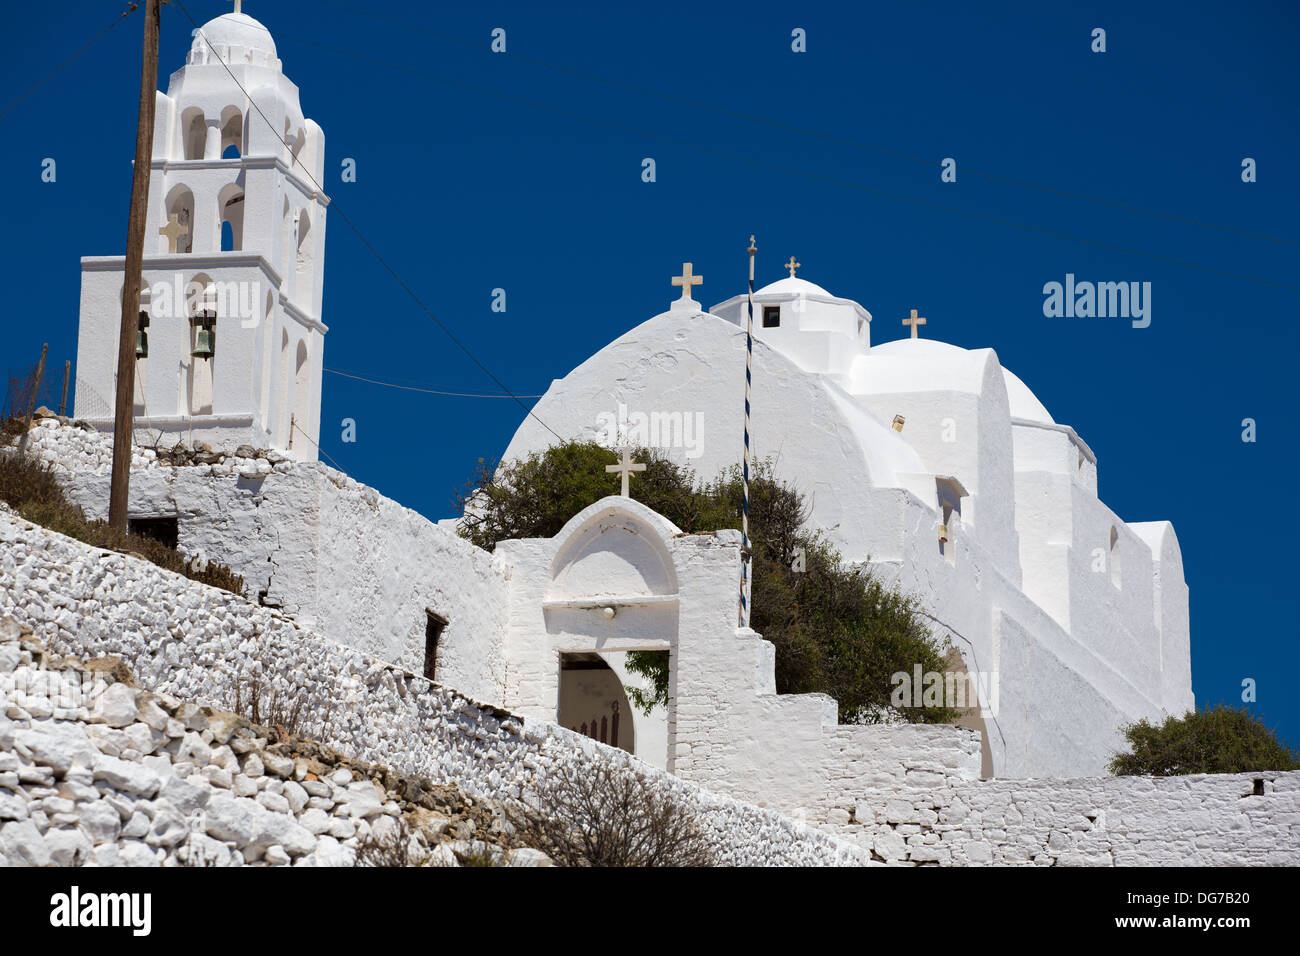 Chiudere fino dalla facciata e ingresso della splendida facciata bianca chiesa ortodossa di Panaghia di Chora, Isola di Folegandros Foto Stock